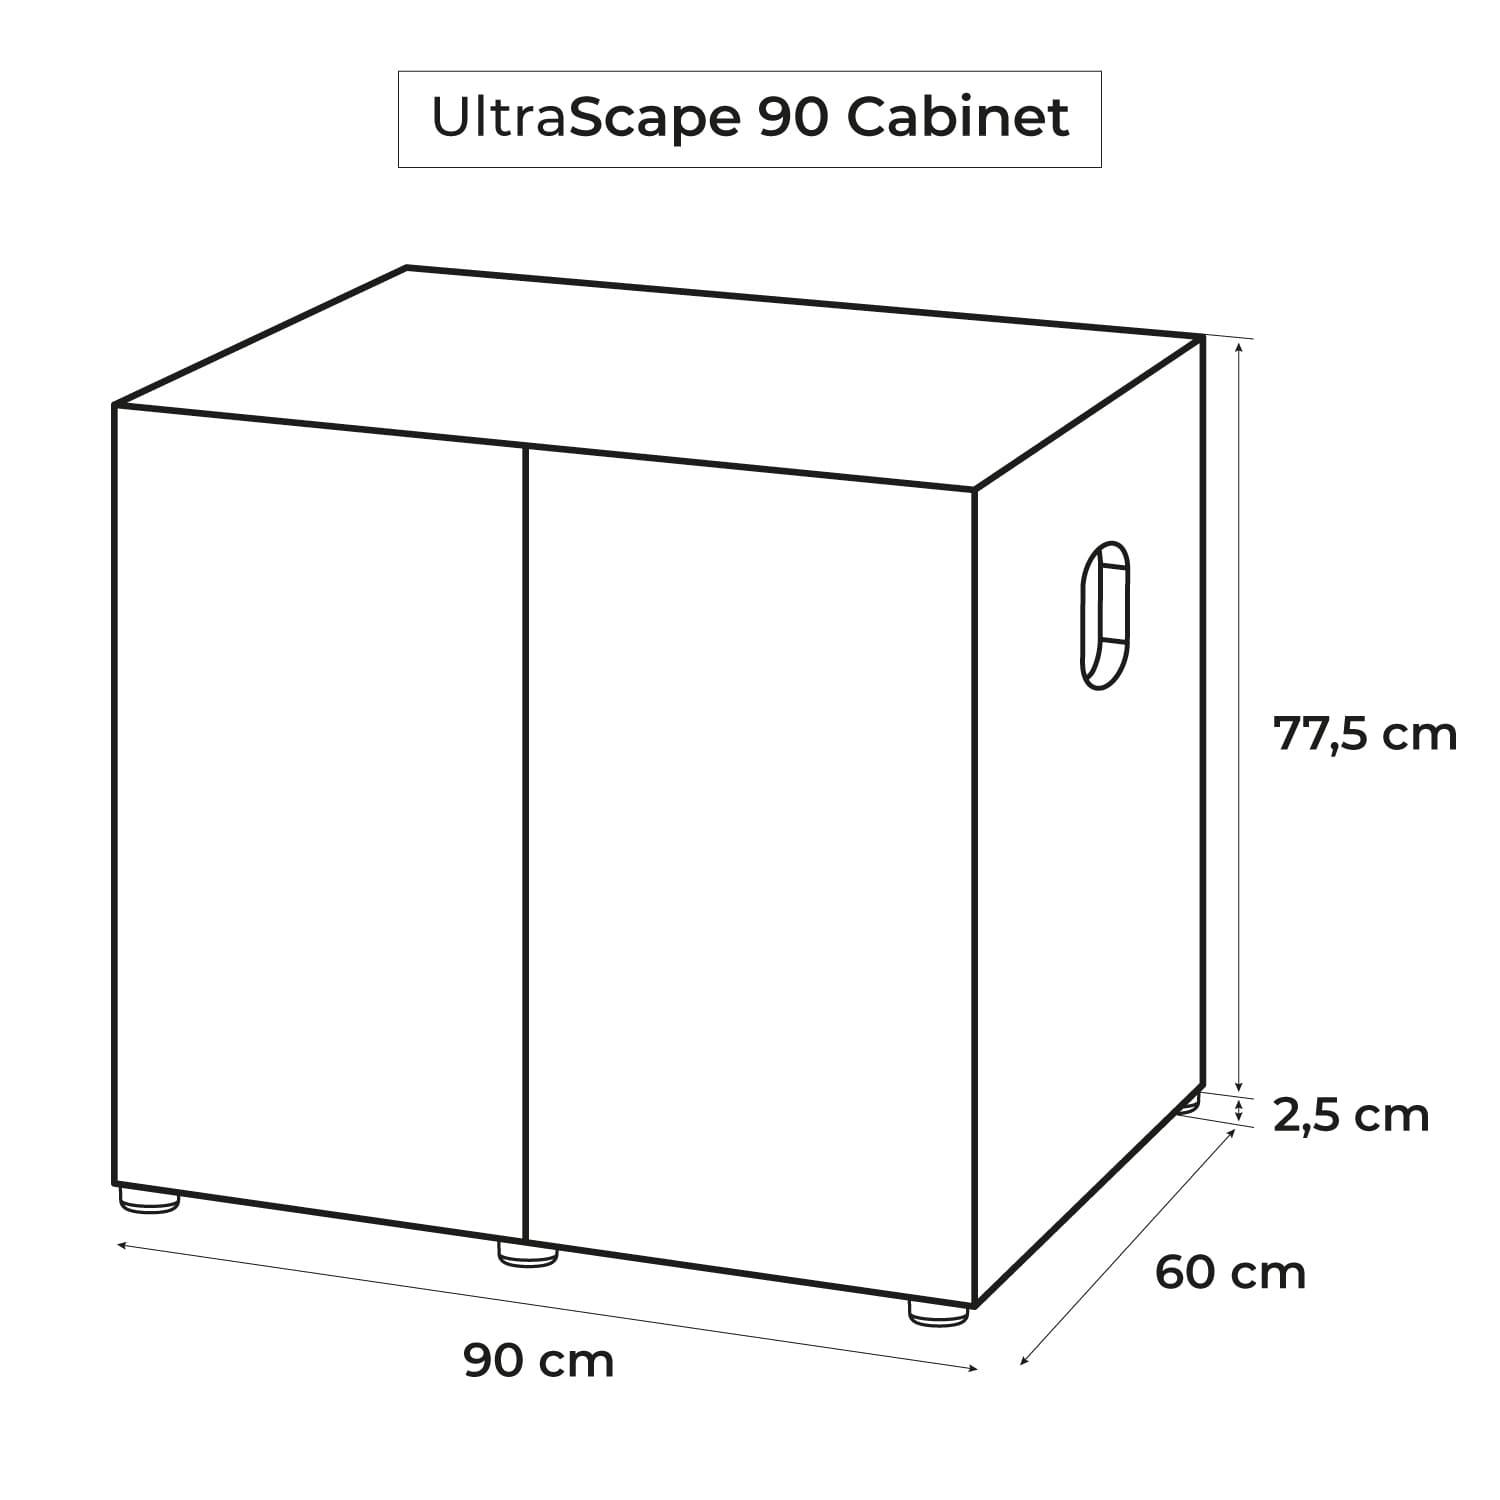 aquael-meuble-ultrascape-90-snow-dimensions-90-x-60-x-80-cm-pour-aquarium-7